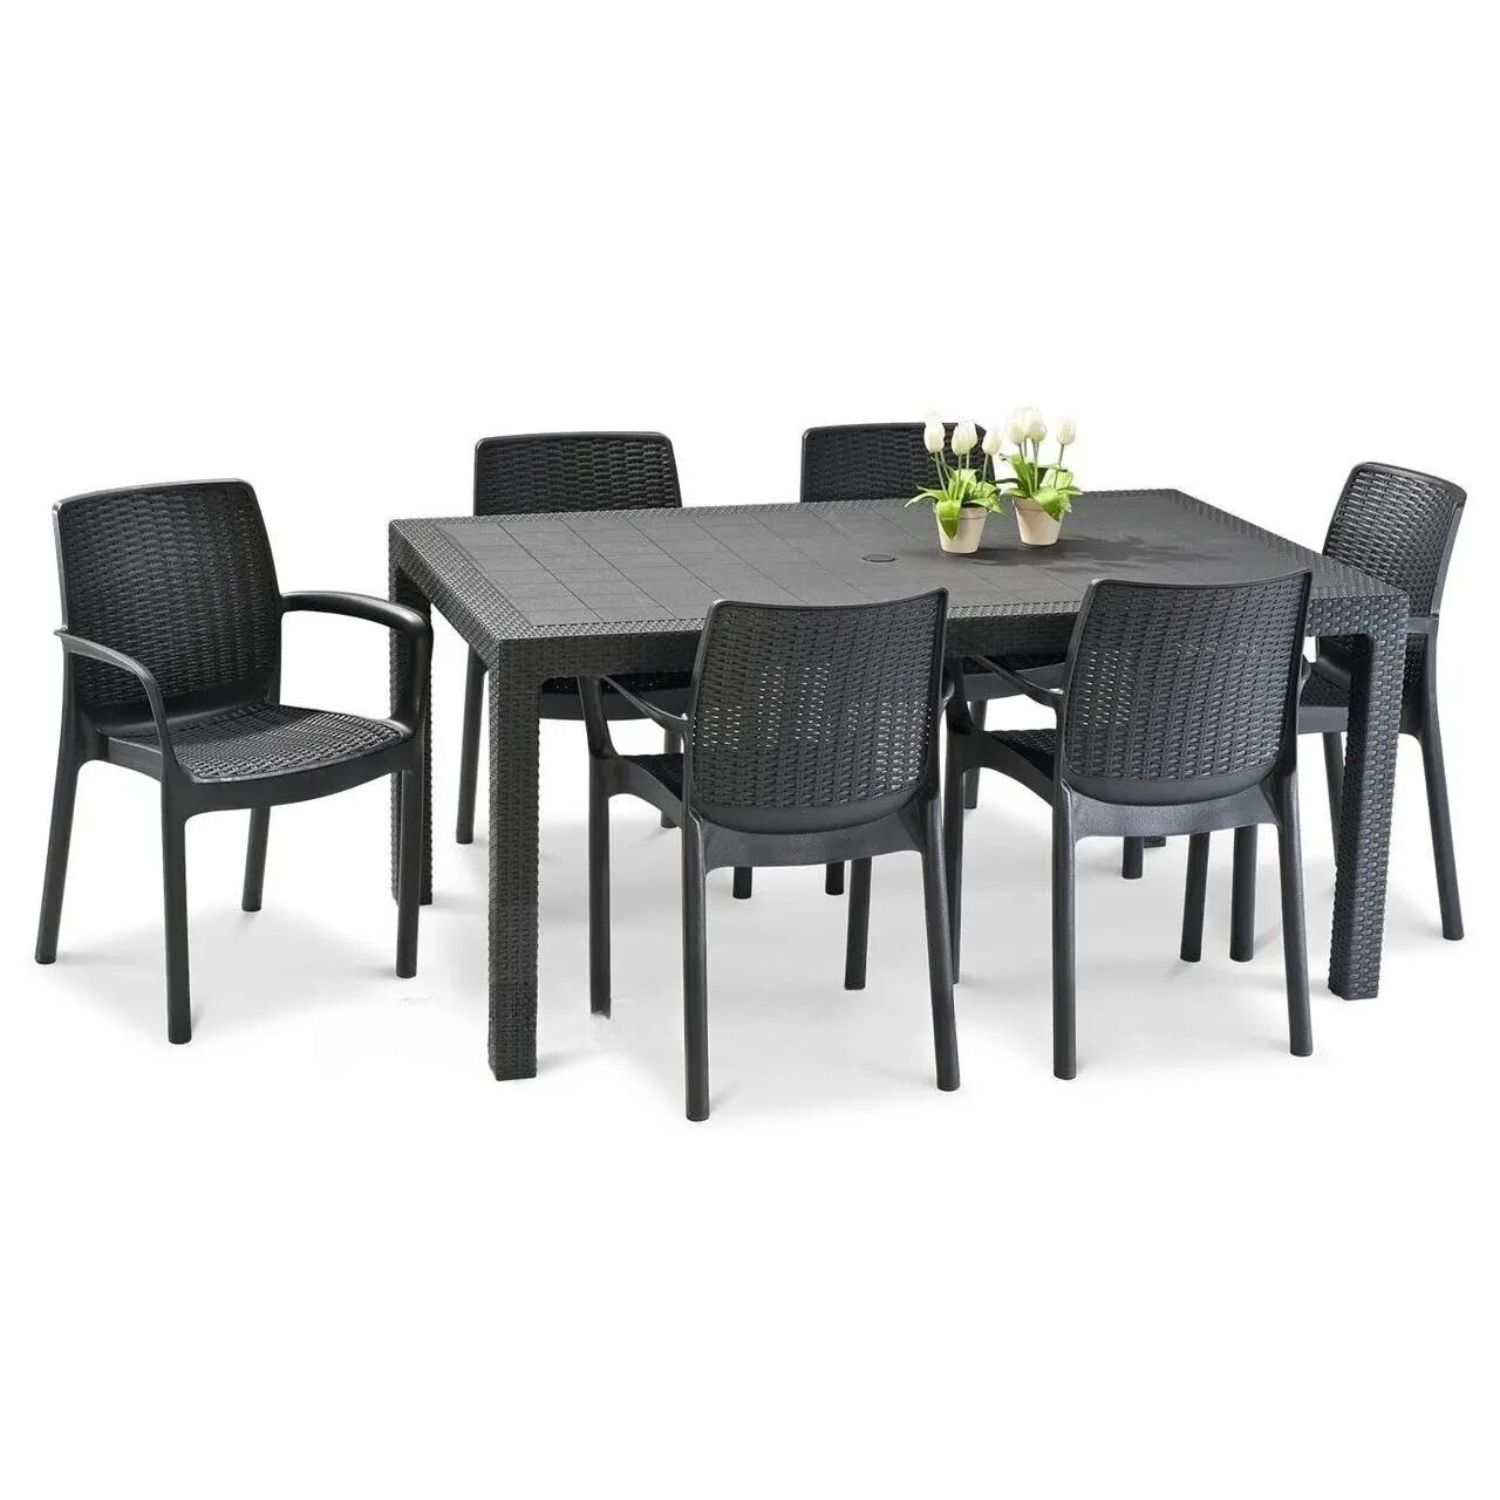 Комплект мебели Elfplast на 6 персон RT0271 стол обеденный + 6 стульев